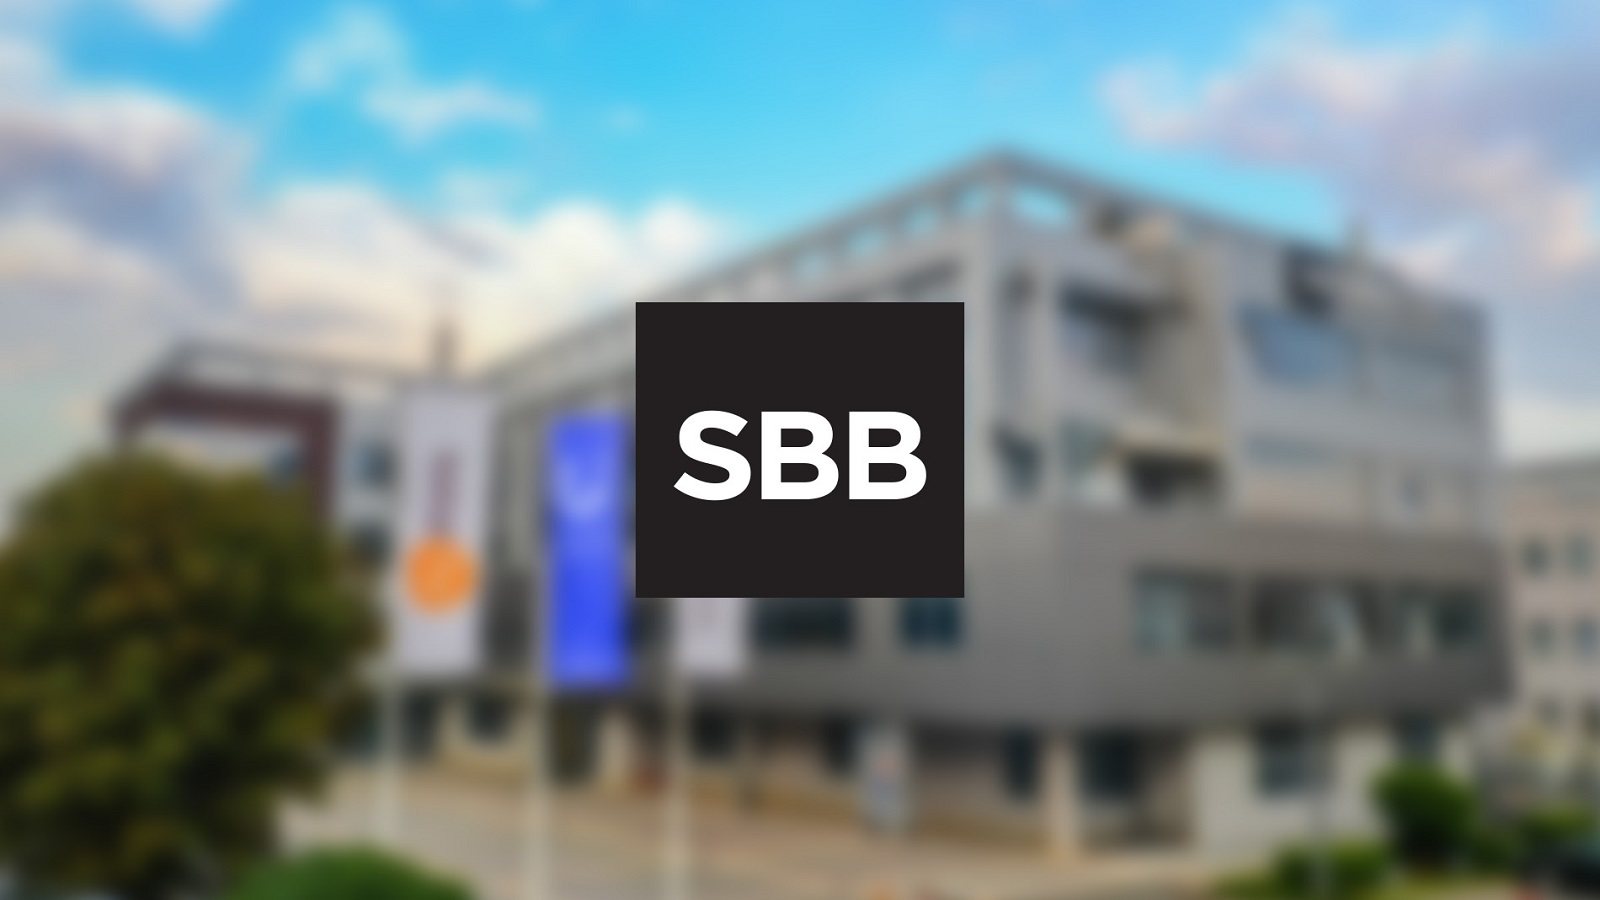 RTS cenzurisao reklame SBB kompanije bez objašnjenja